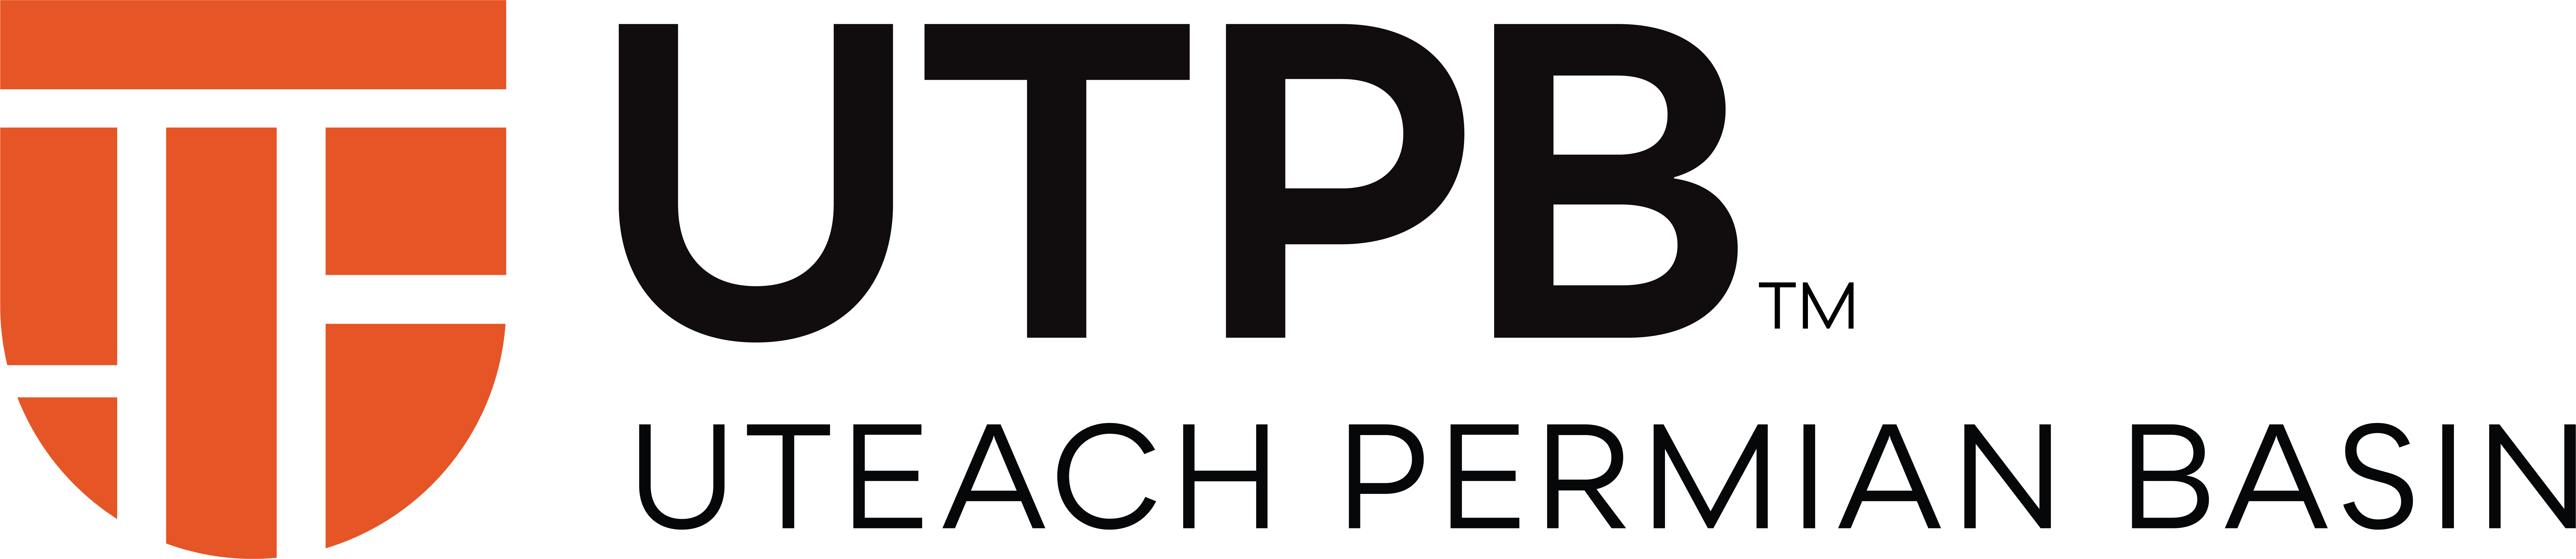 UTeach Permian Basin Logo with Academic Shield